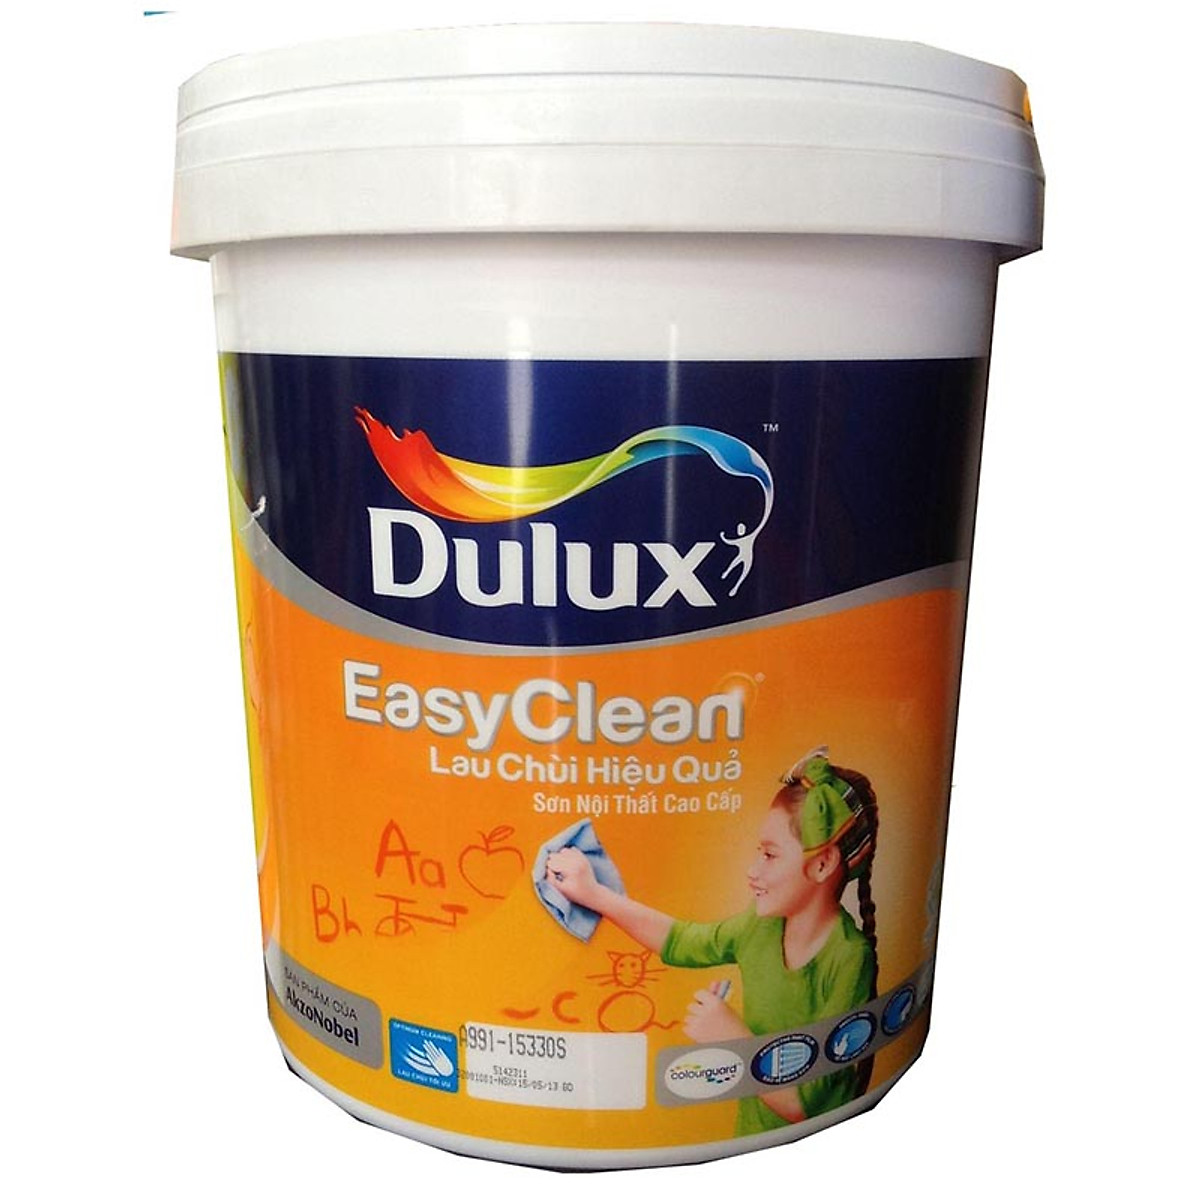 Dulux EasyClean Lau Chùi Hiệu Quả - Bề mặt mờ Màu 167 - Leather Brogue - 5L